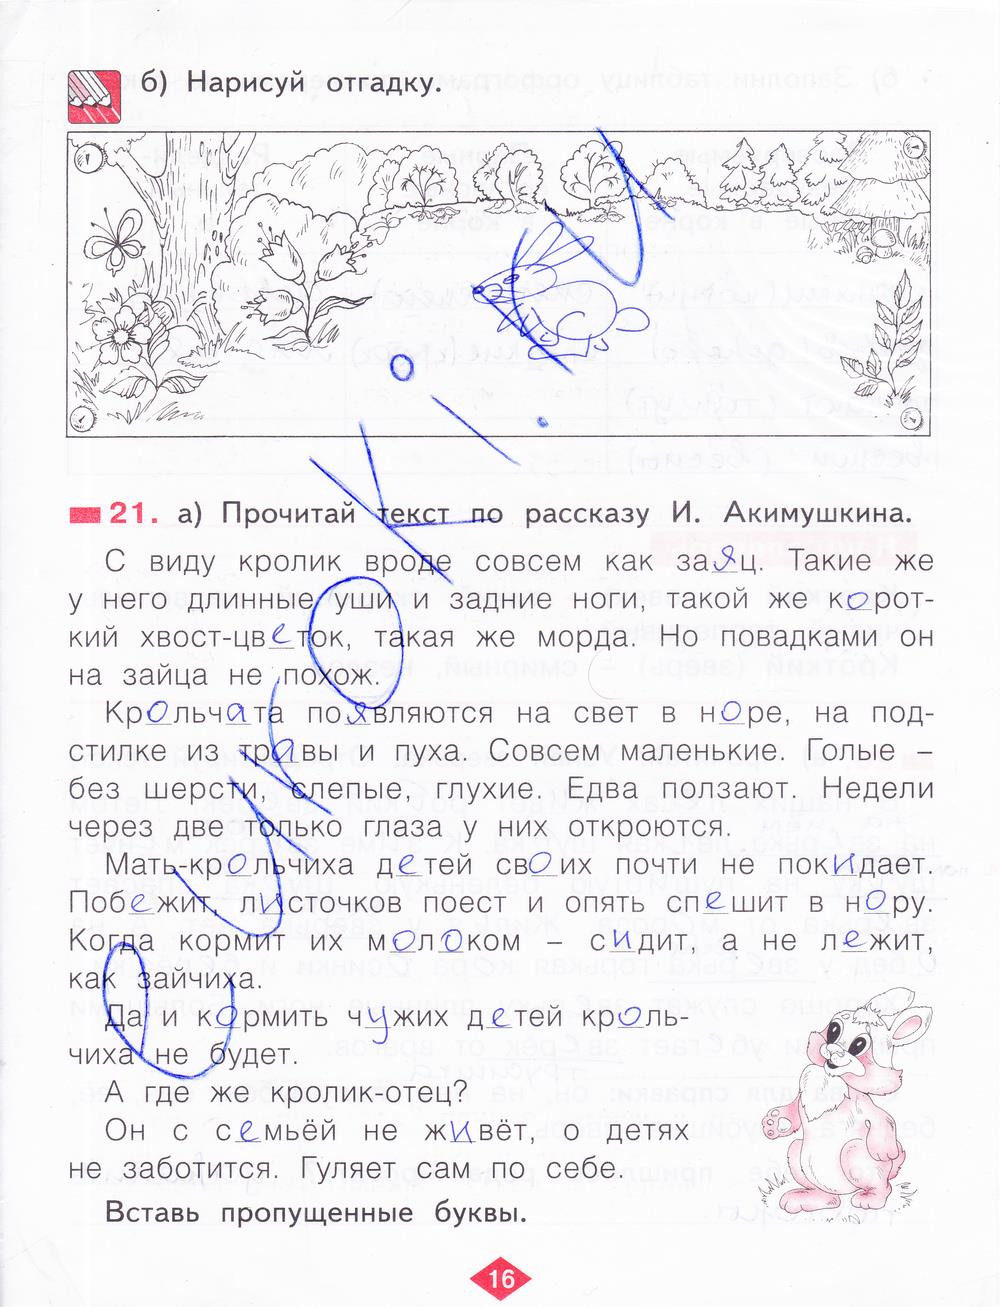 гдз 2 класс рабочая тетрадь часть 4 страница 16 русский язык Яковлева